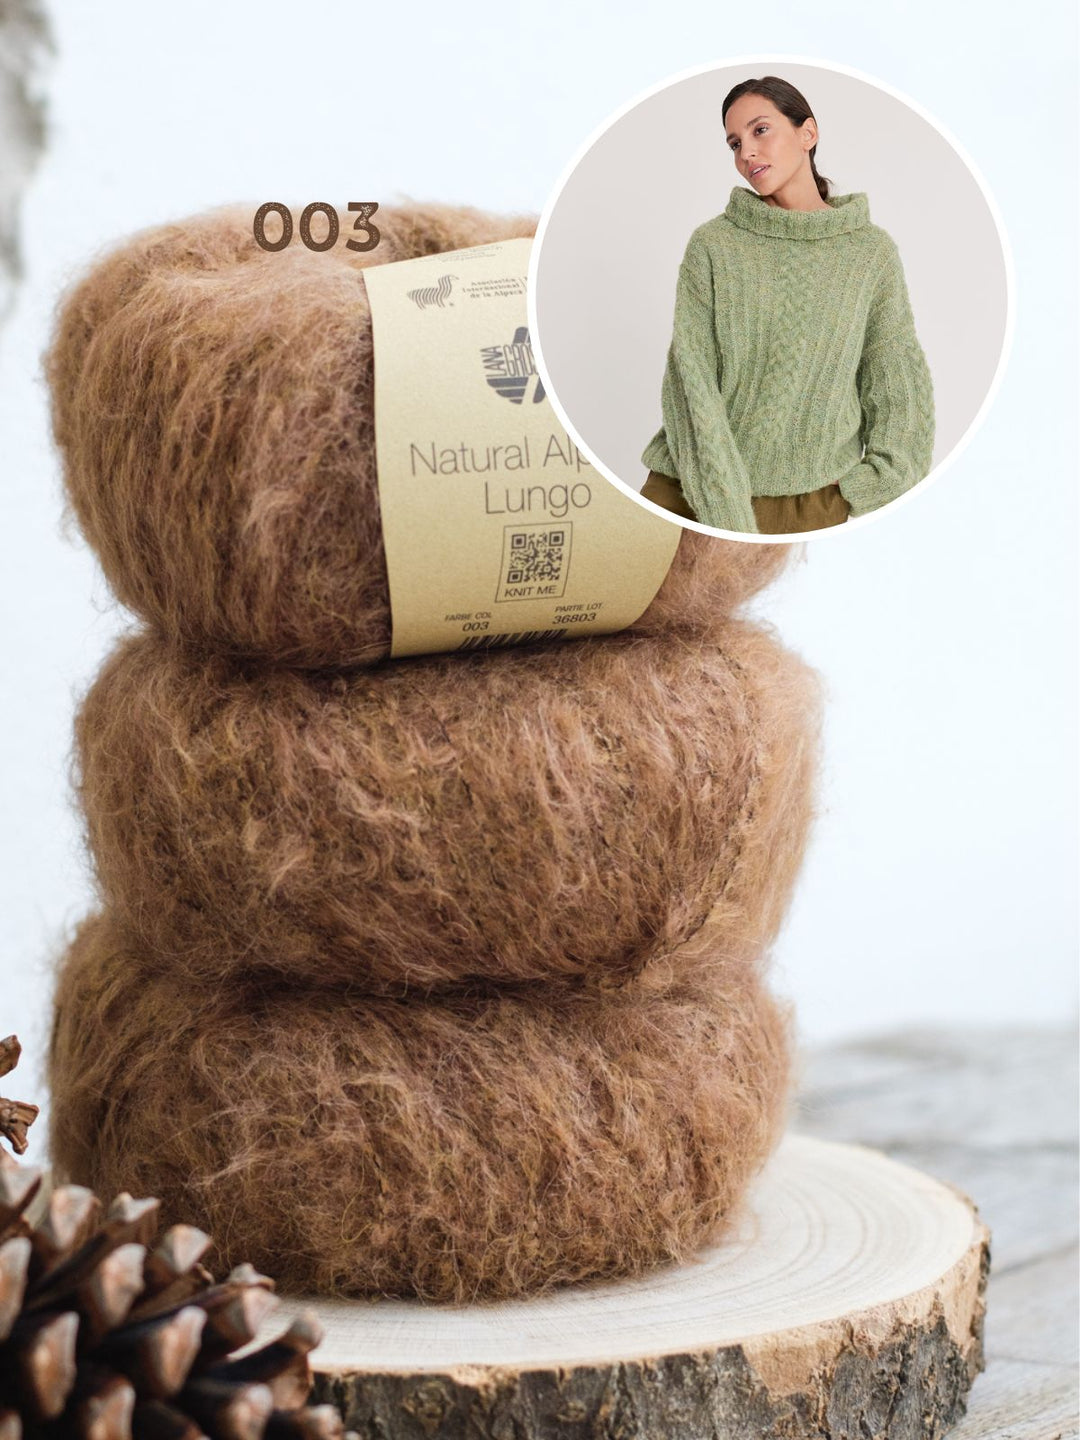 Breipakket Natural Alpaca Lungo pullover met gevlochten kabels